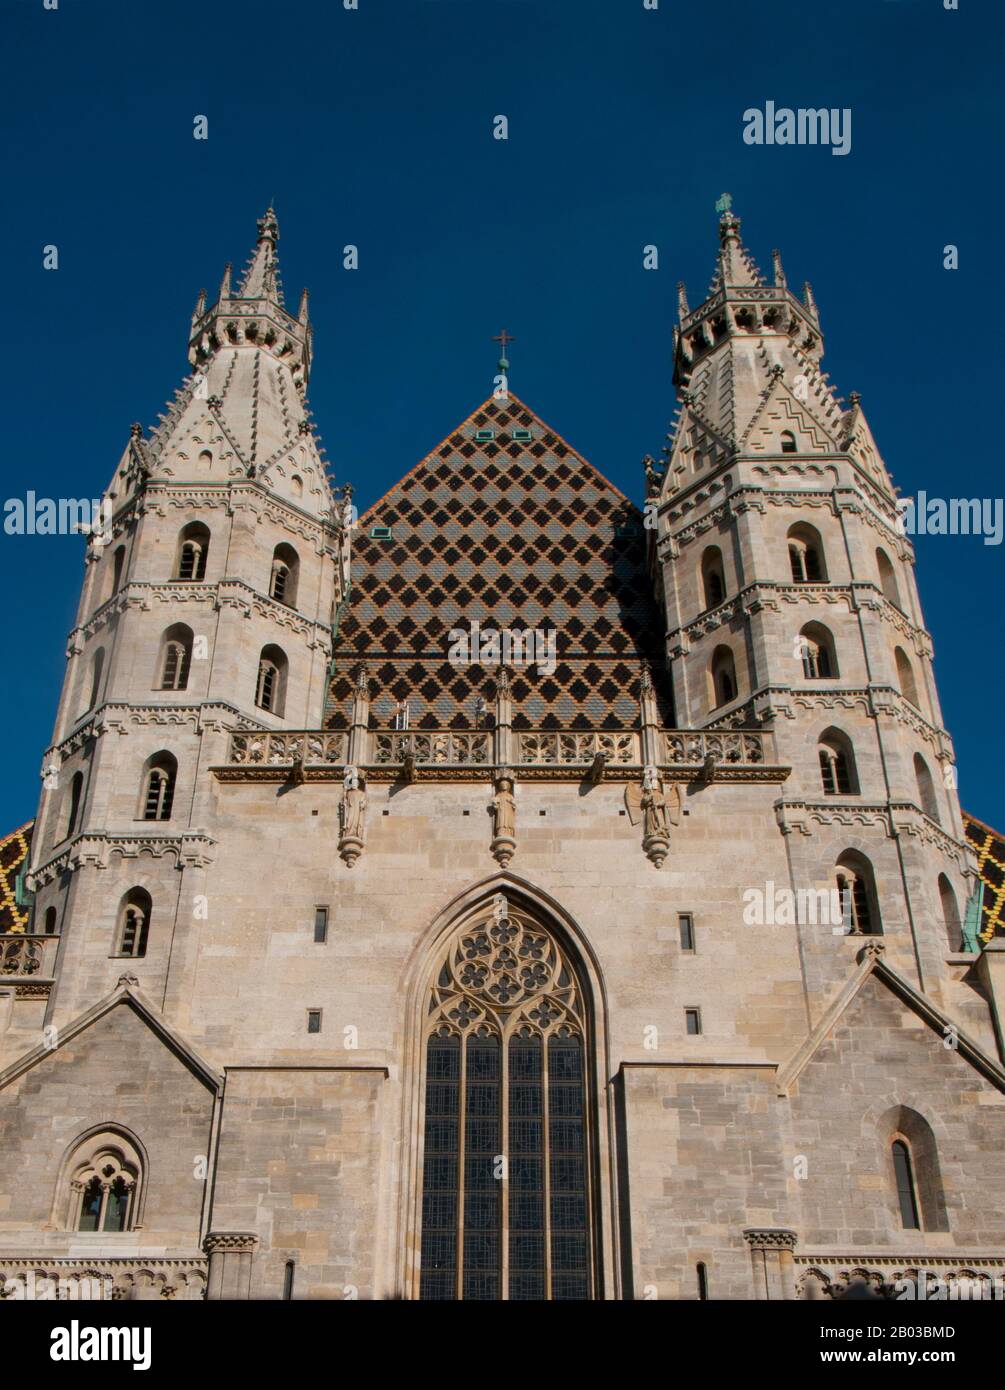 La Catedral de San Esteban es la iglesia madre de la Arquidiócesis Católica Romana de Viena y la sede del Arzobispo de Viena. La actual forma románica y gótica de la catedral, vista hoy en Stephansplatz, fue iniciada en gran parte por el Duque Rudolf IV (1339-1365) y se encuentra sobre las ruinas de dos iglesias anteriores, la primera iglesia parroquial consagrada en 1147. Foto de stock